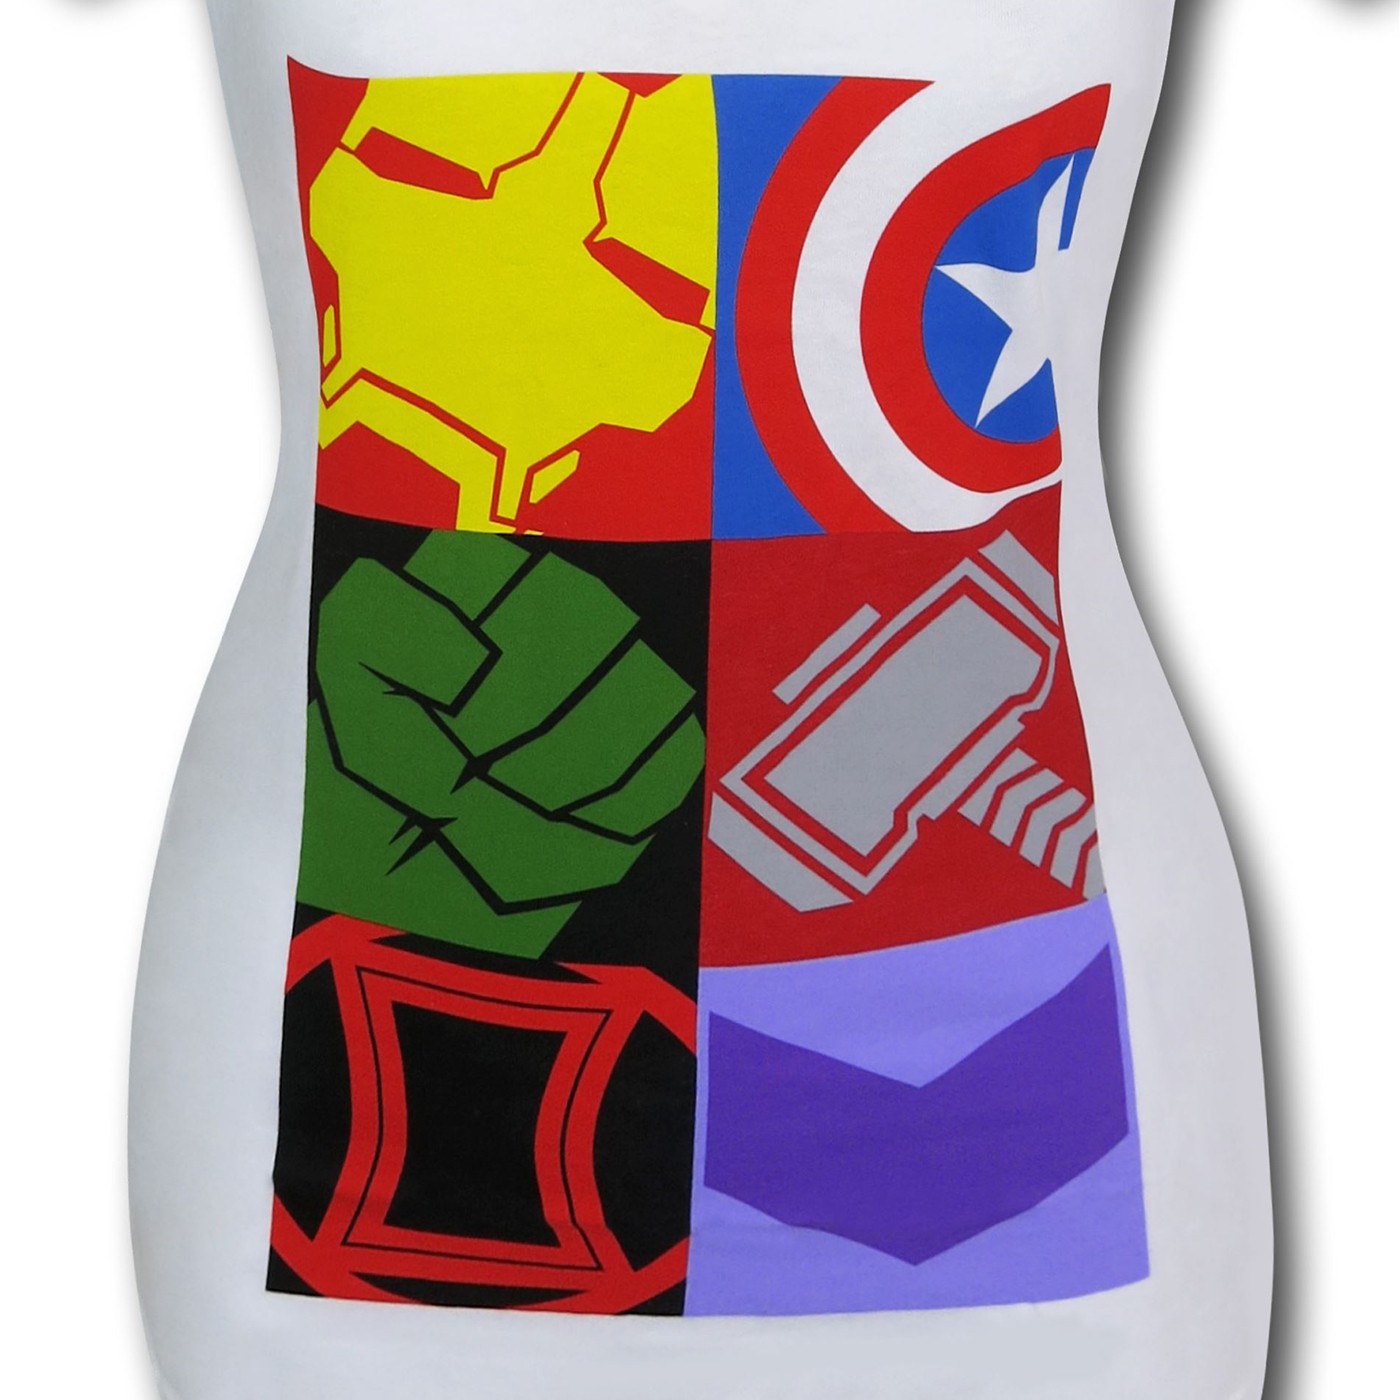 Avengers Boxes Women's V-Neck T-Shirt